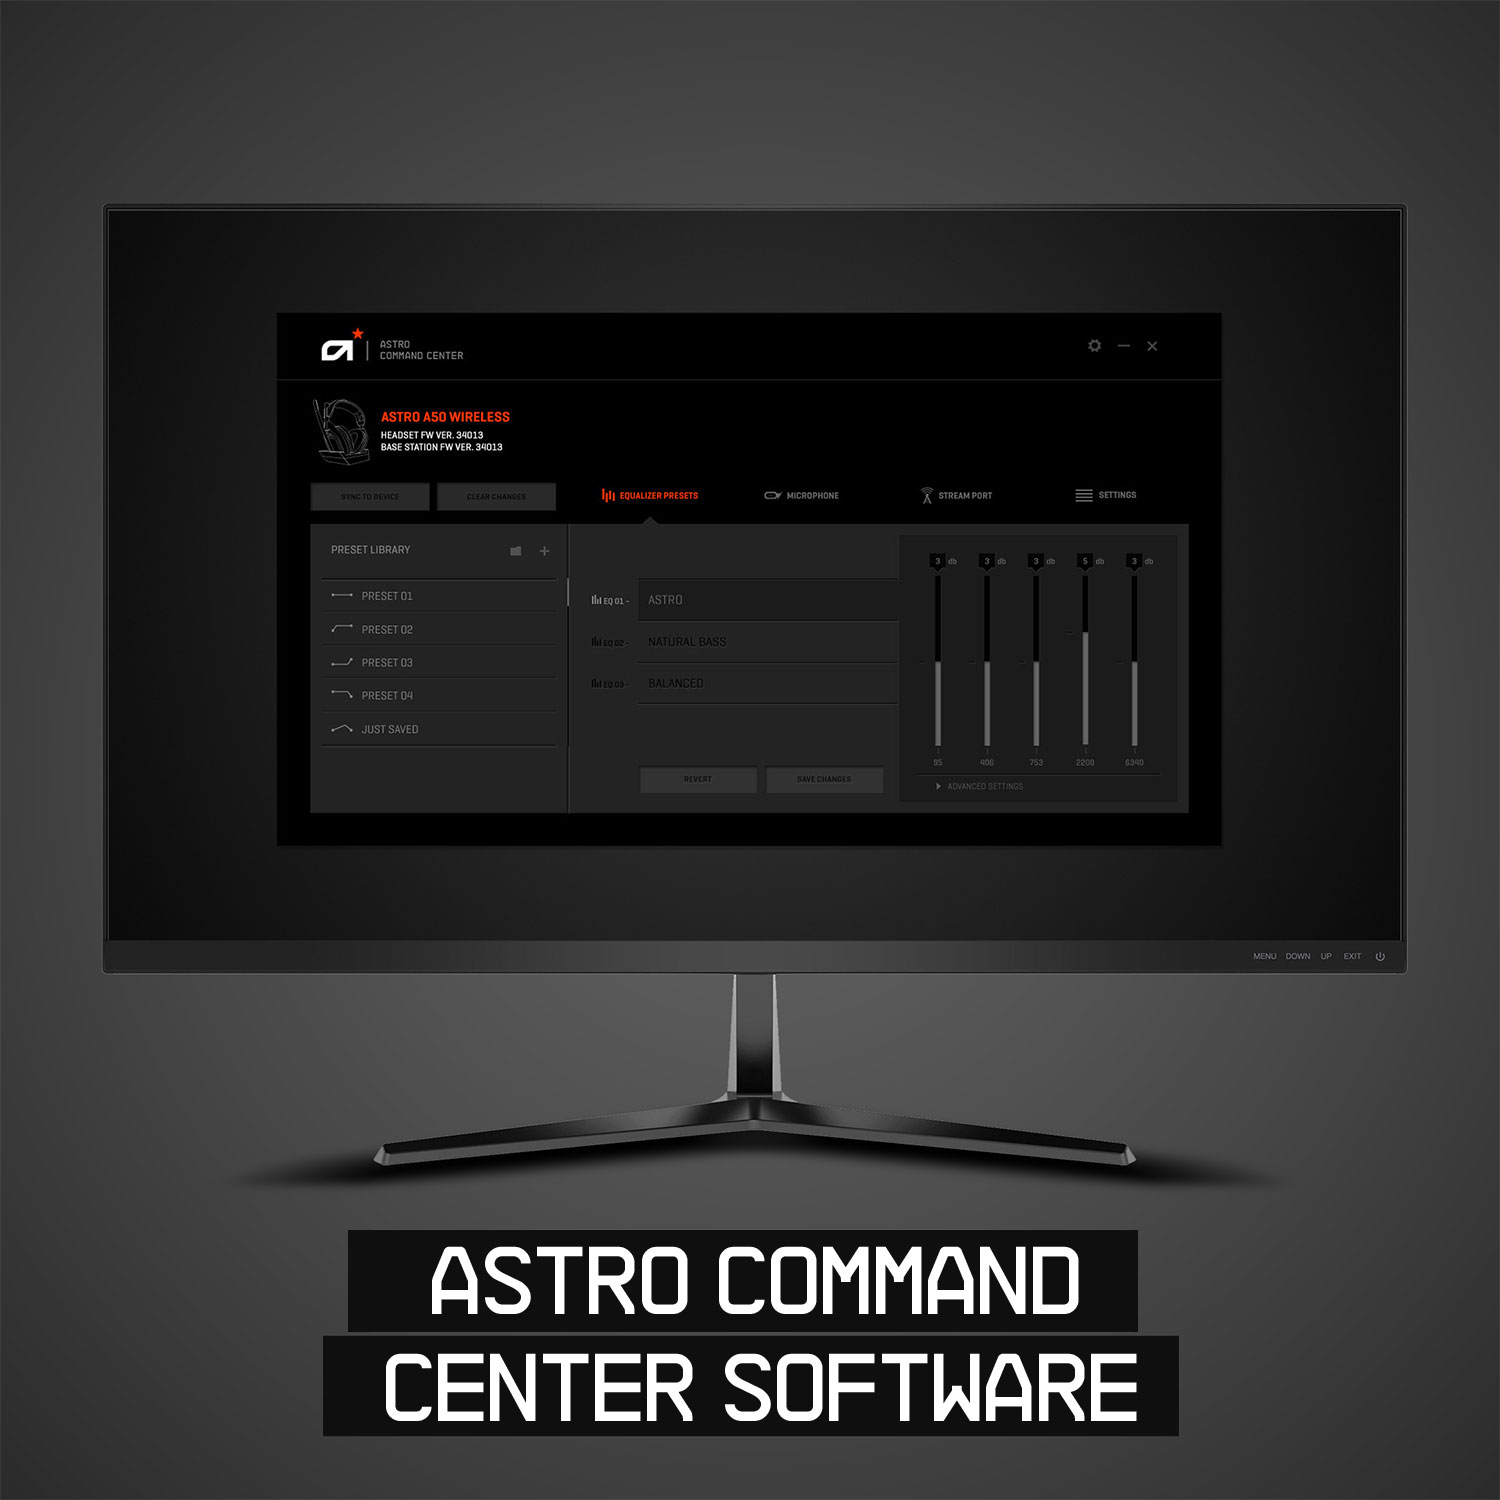 超目玉アイテム Astro Gaming A50 Base Station For Ps4 売れ筋 Webrothers Com Br